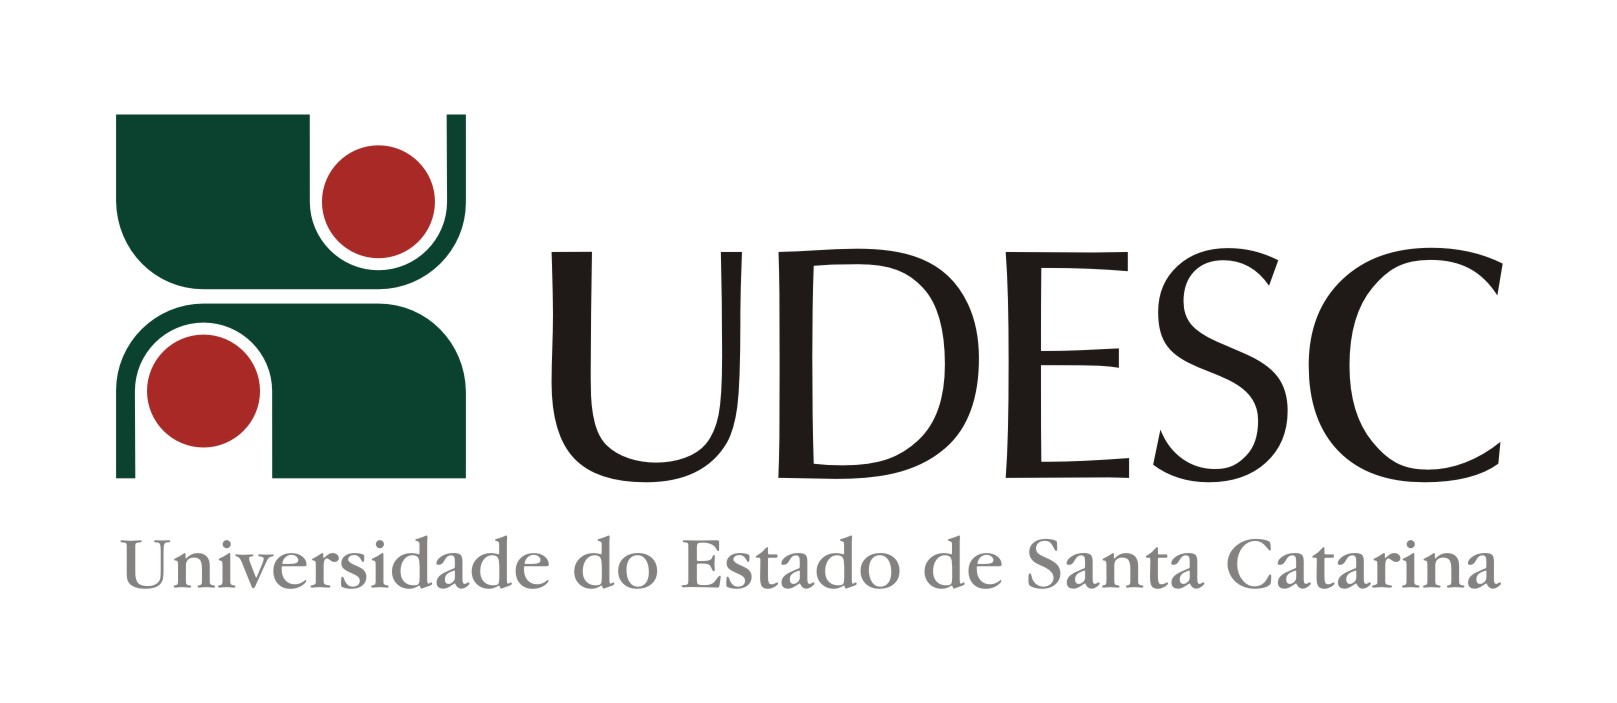 UDESC Logo photo - 1